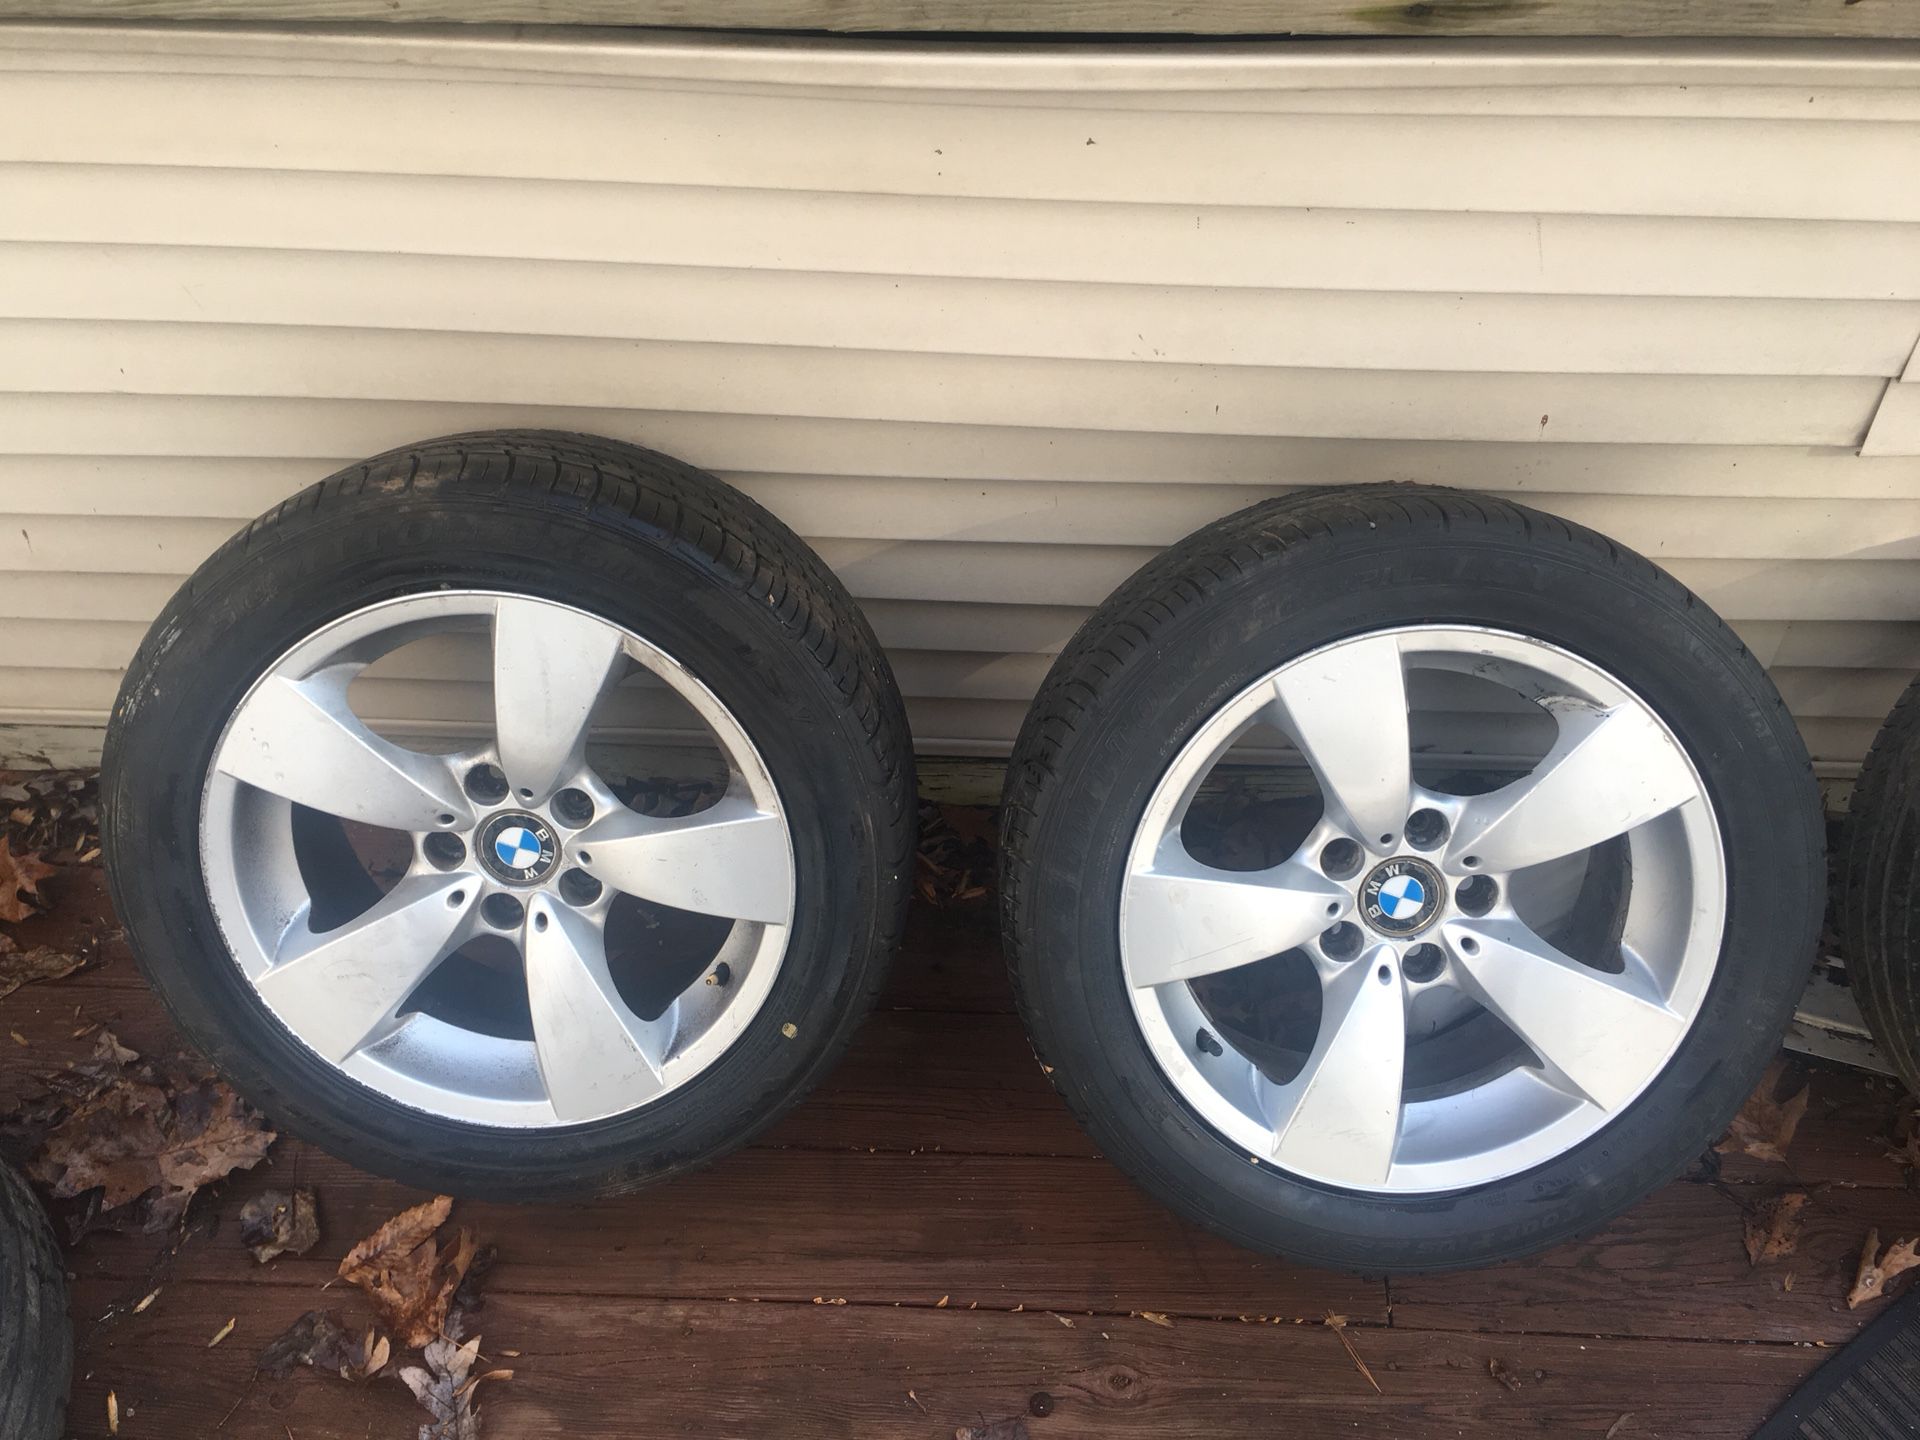 BMW wheels (3) 225/50 R17